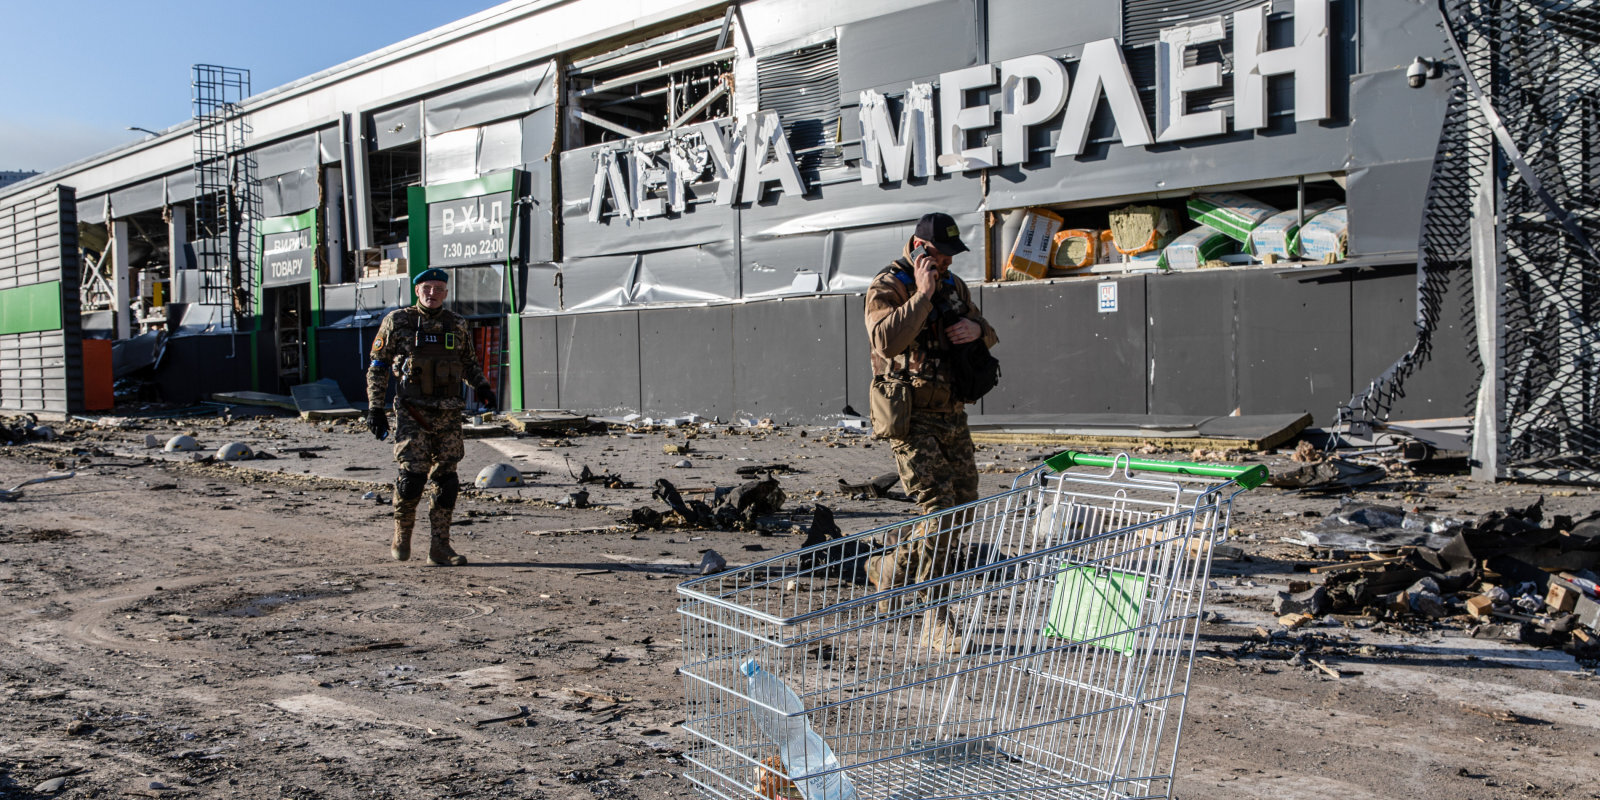 Сколько стоит война? Глобальные экономические последствия боевых действий в Украине